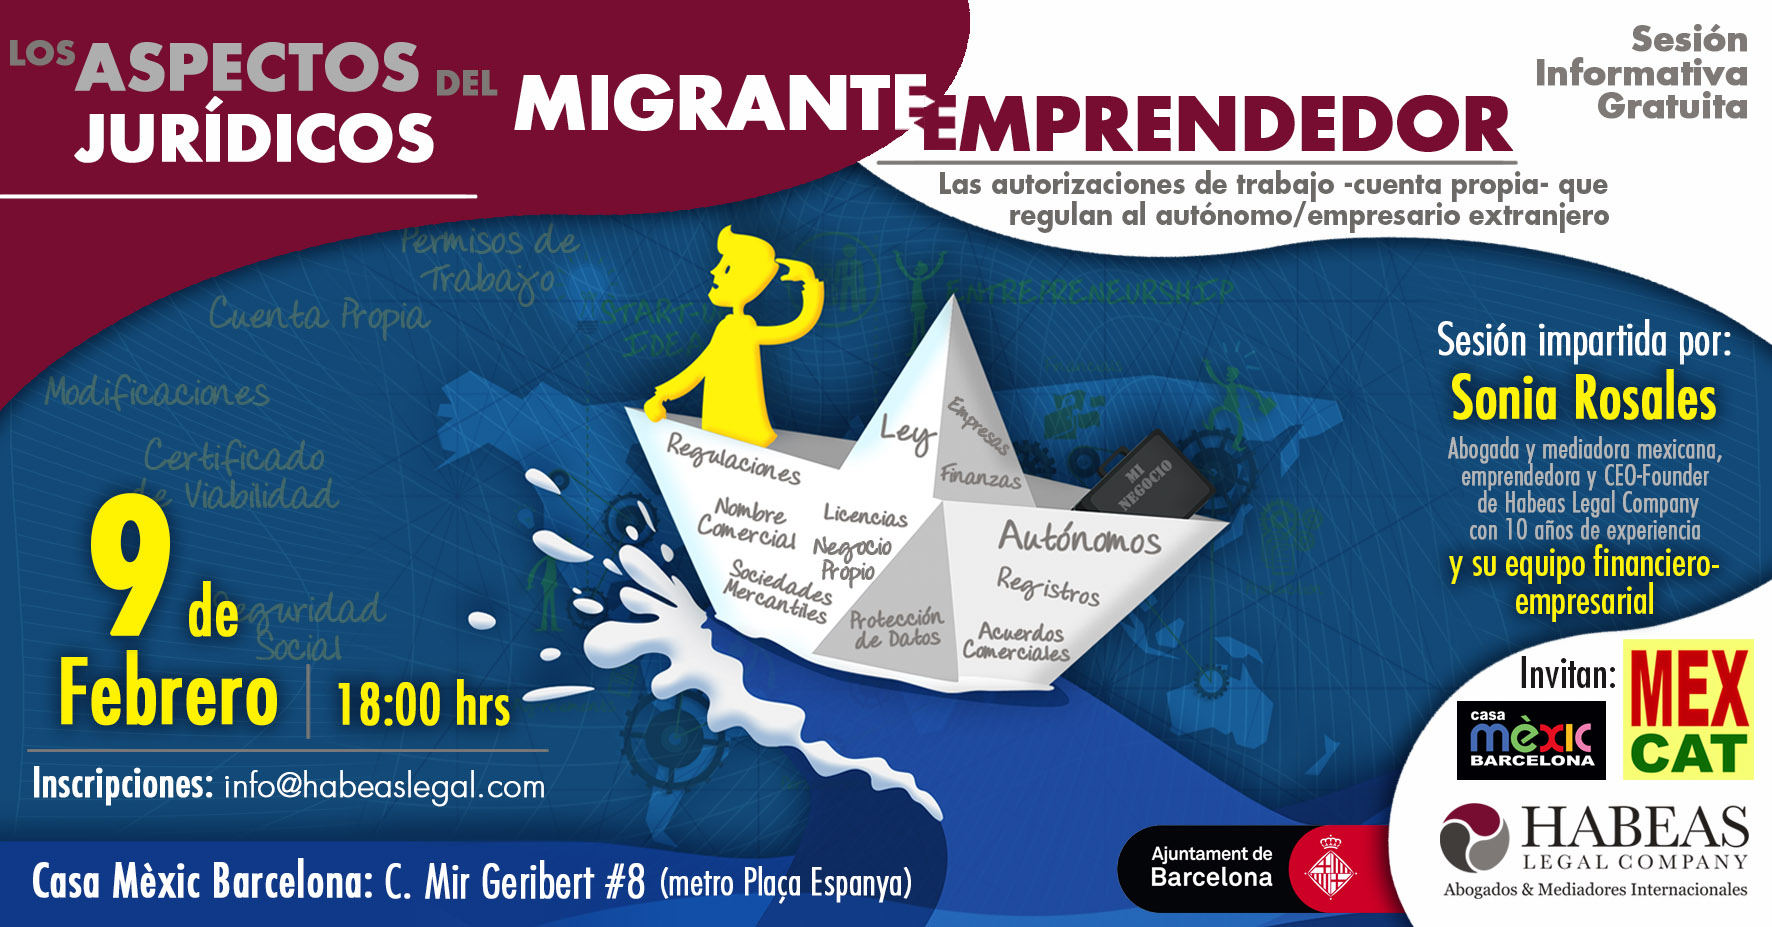 Aspectos Jurídicos Emprendedor FEB evento FB 1 - ¿Cuales son los aspectos jurídicos del Migrante Emprendedor en España?